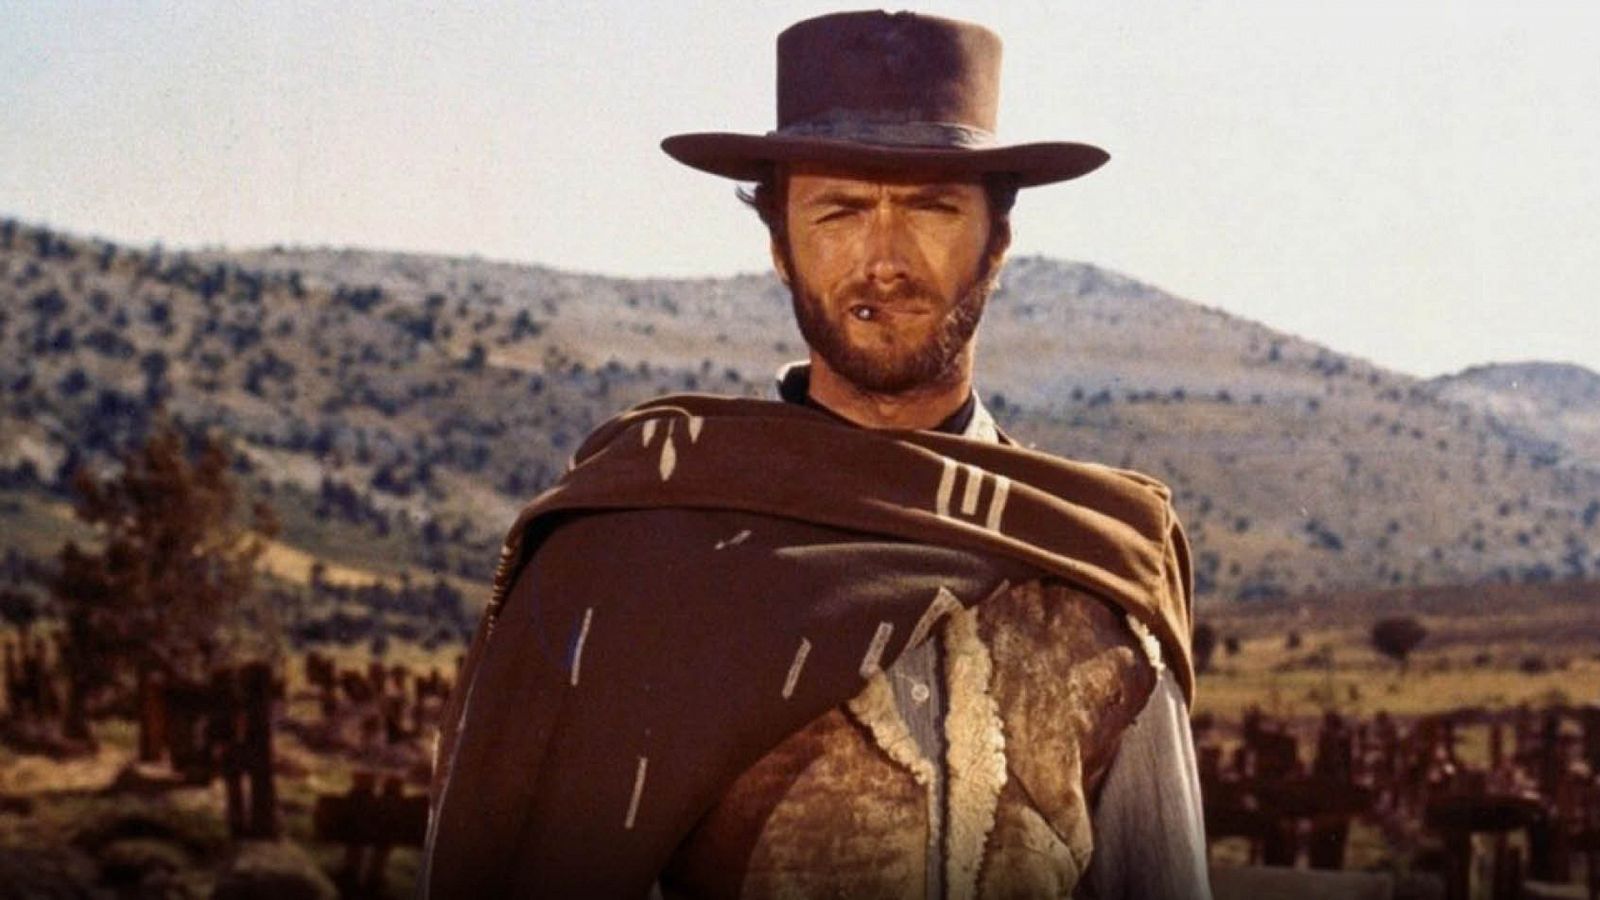 El bueno, el feo y el malo: curiosidades que quizás no sabías de este western filmado en España